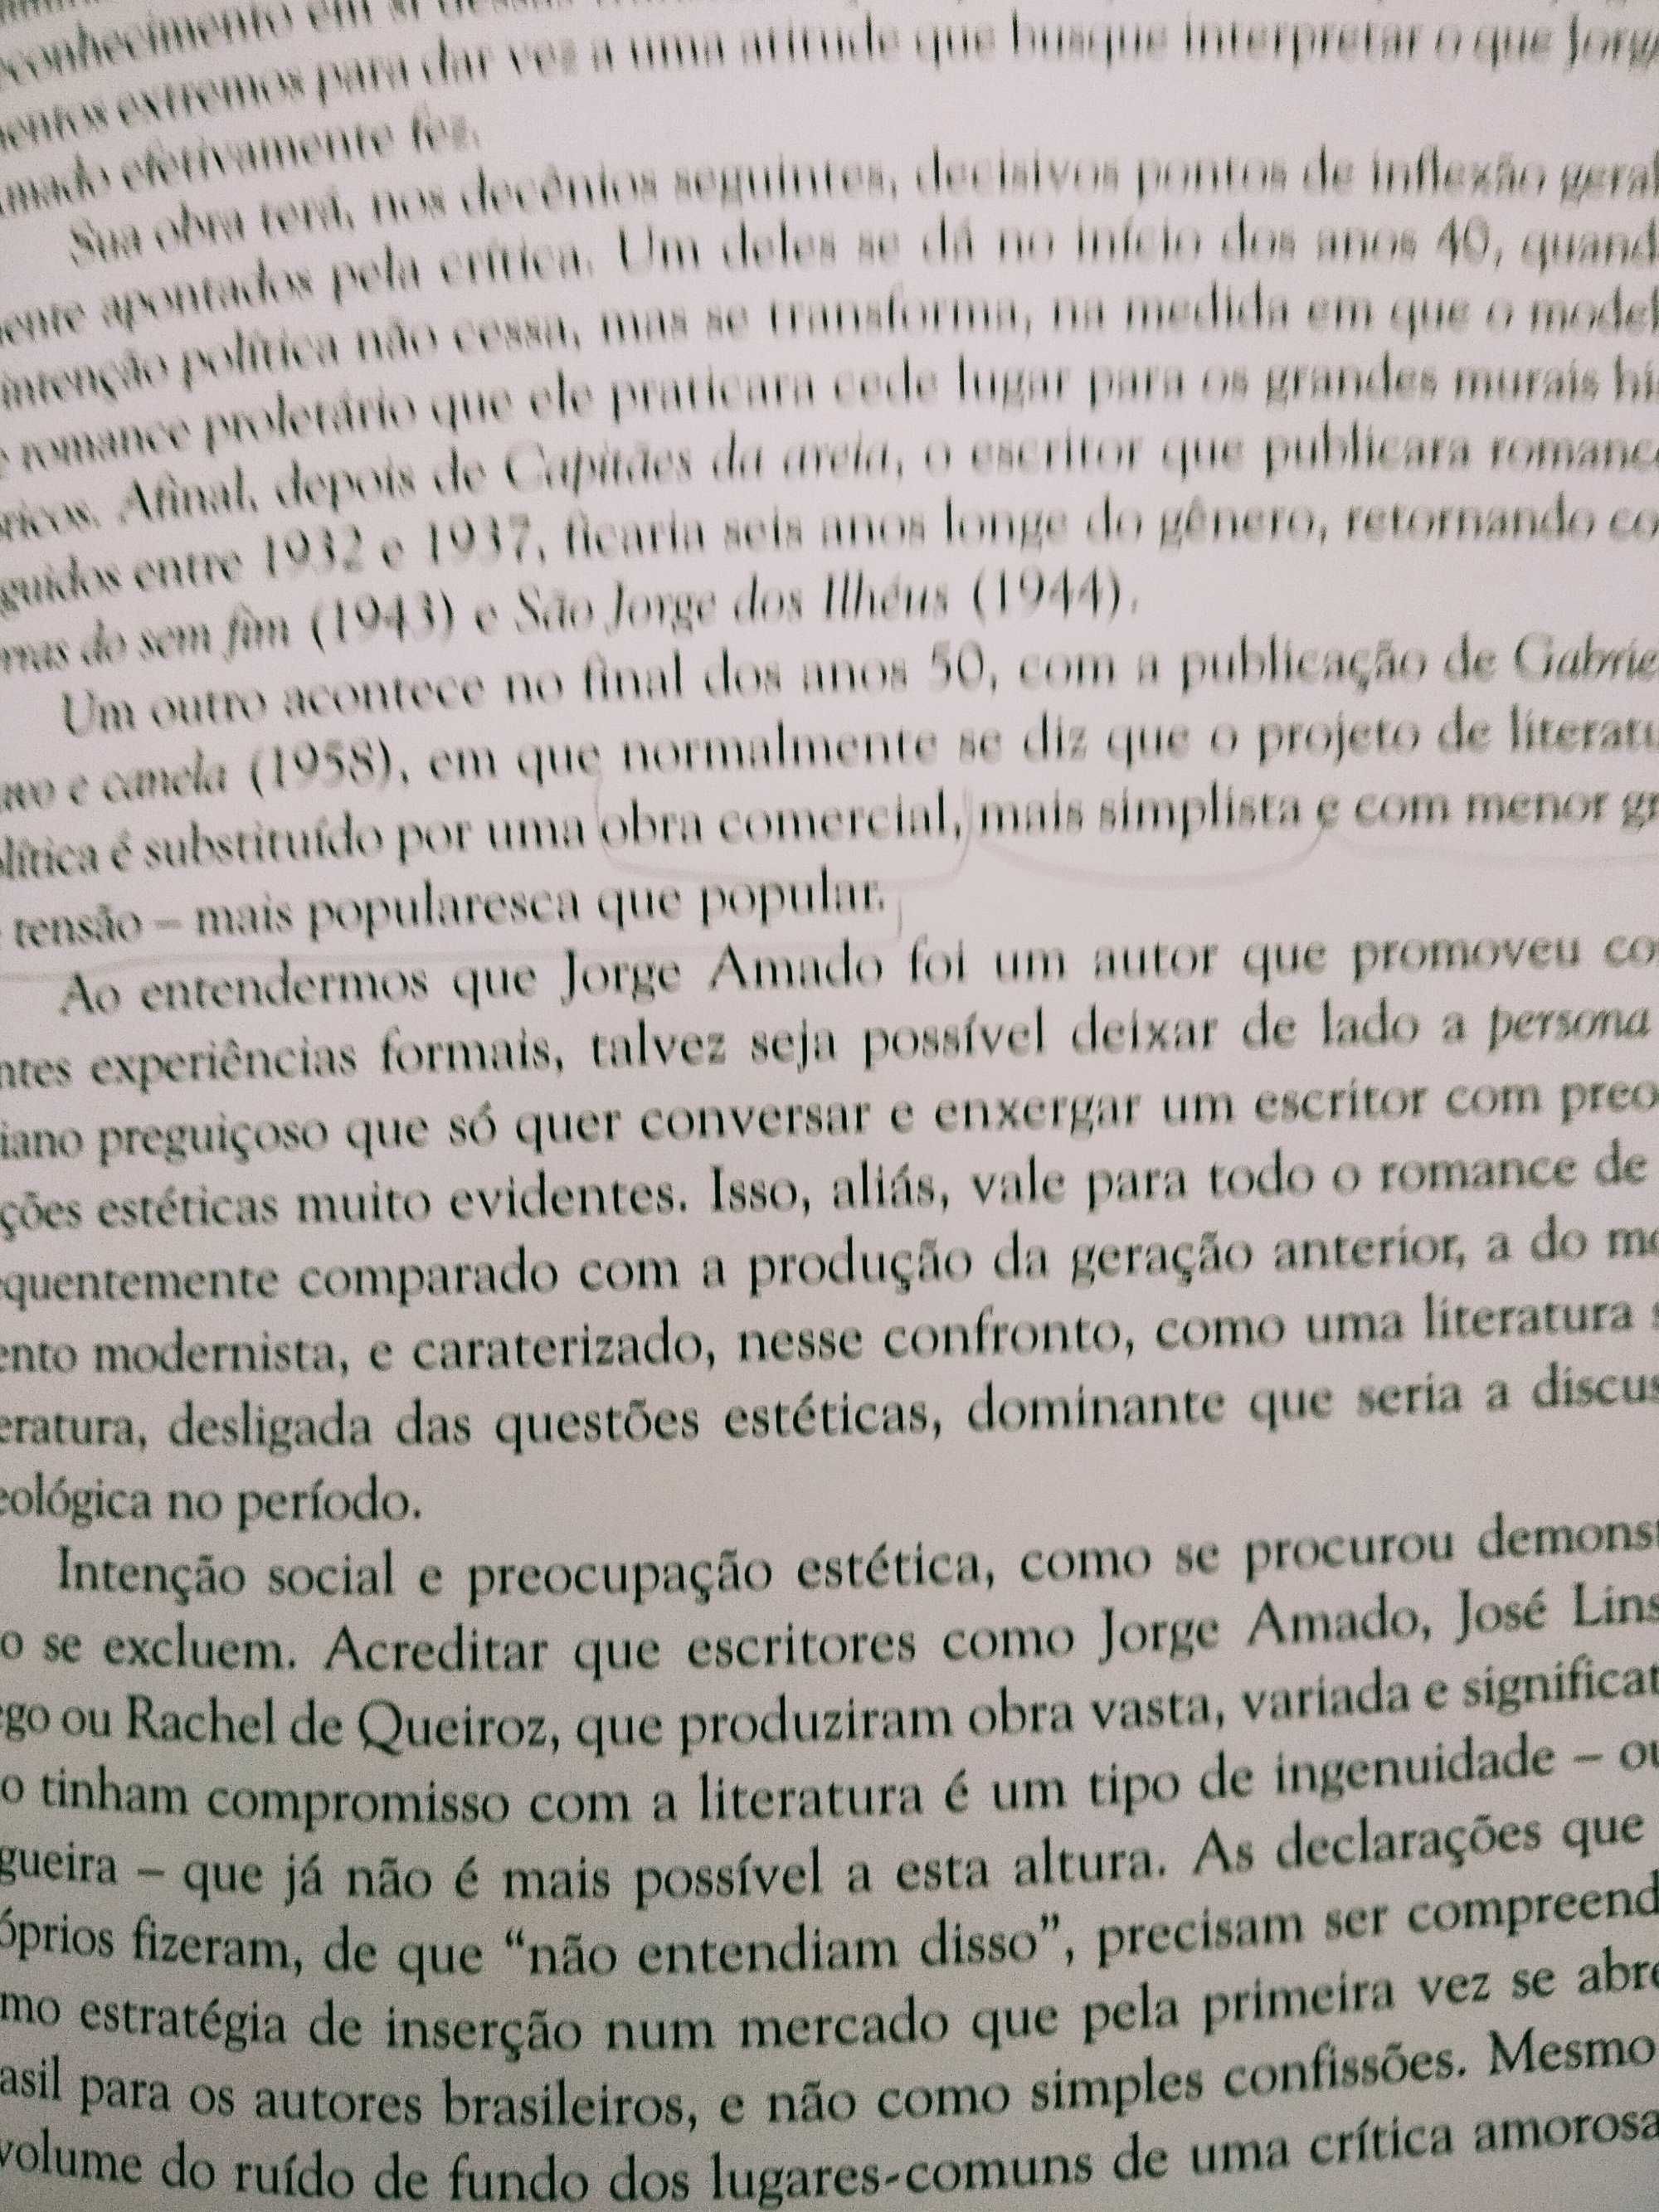 Jorge Amado e o Neorrealismo Português